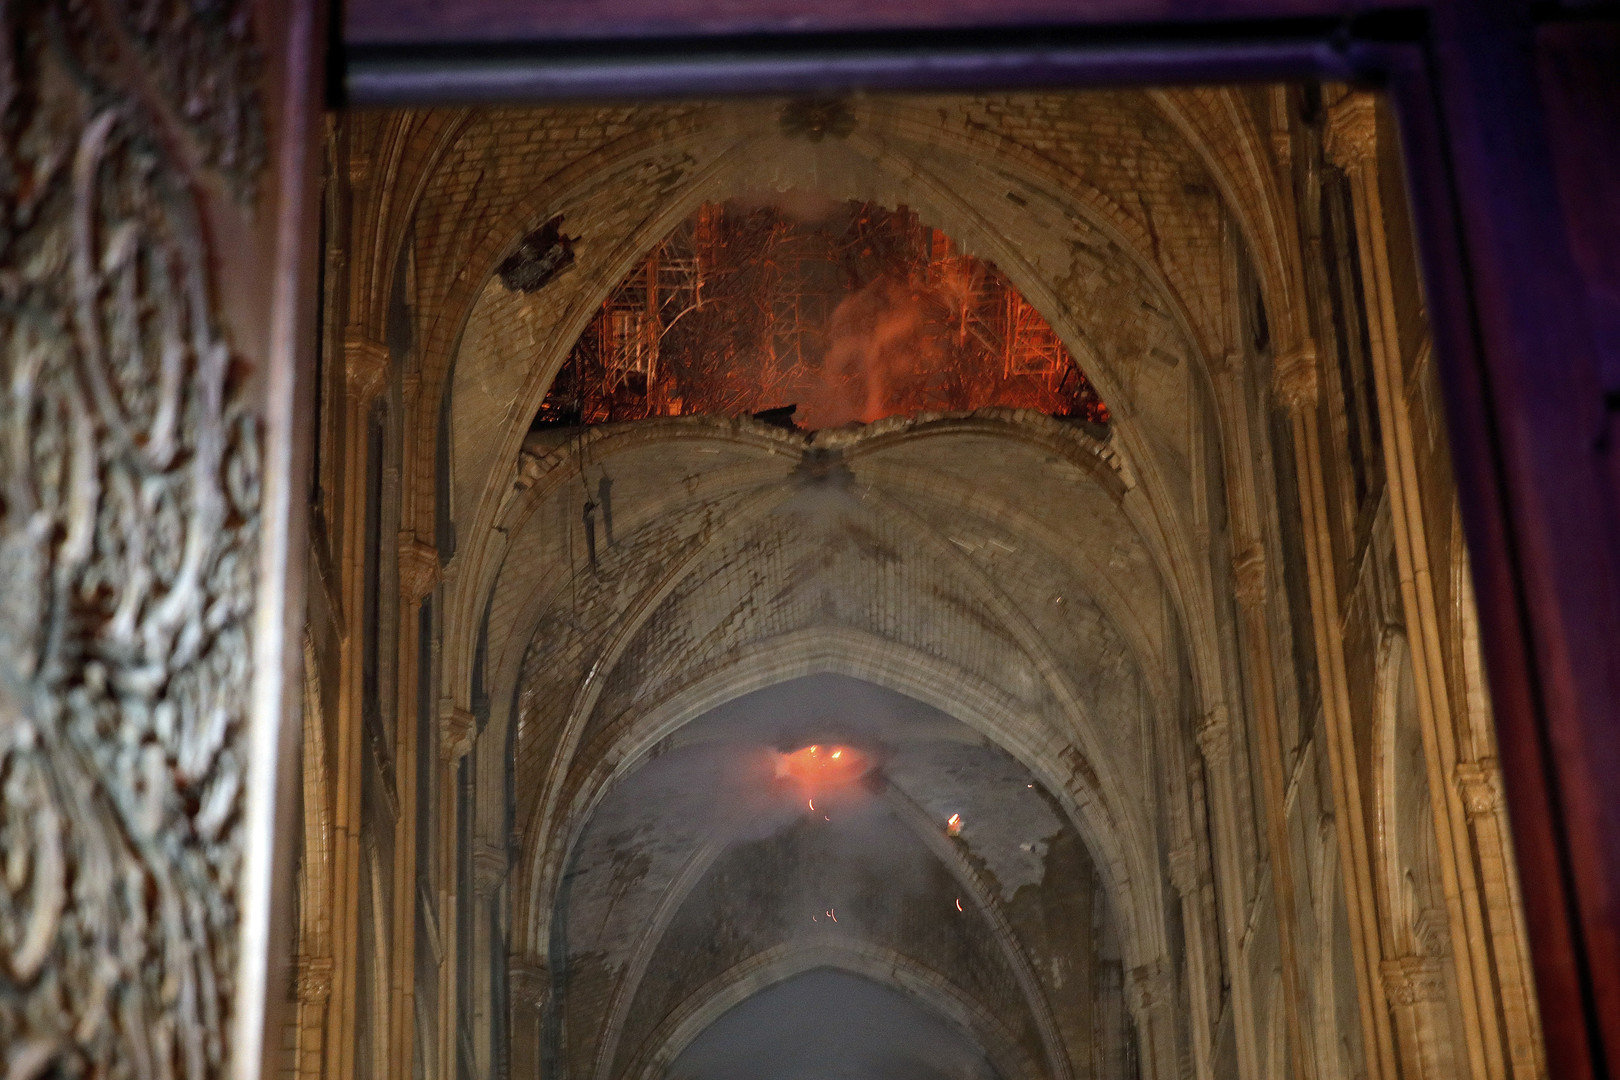 Les glaçantes premières images de l'intérieur de Notre-Dame de Paris, ravagée par le feu (IMAGES) 